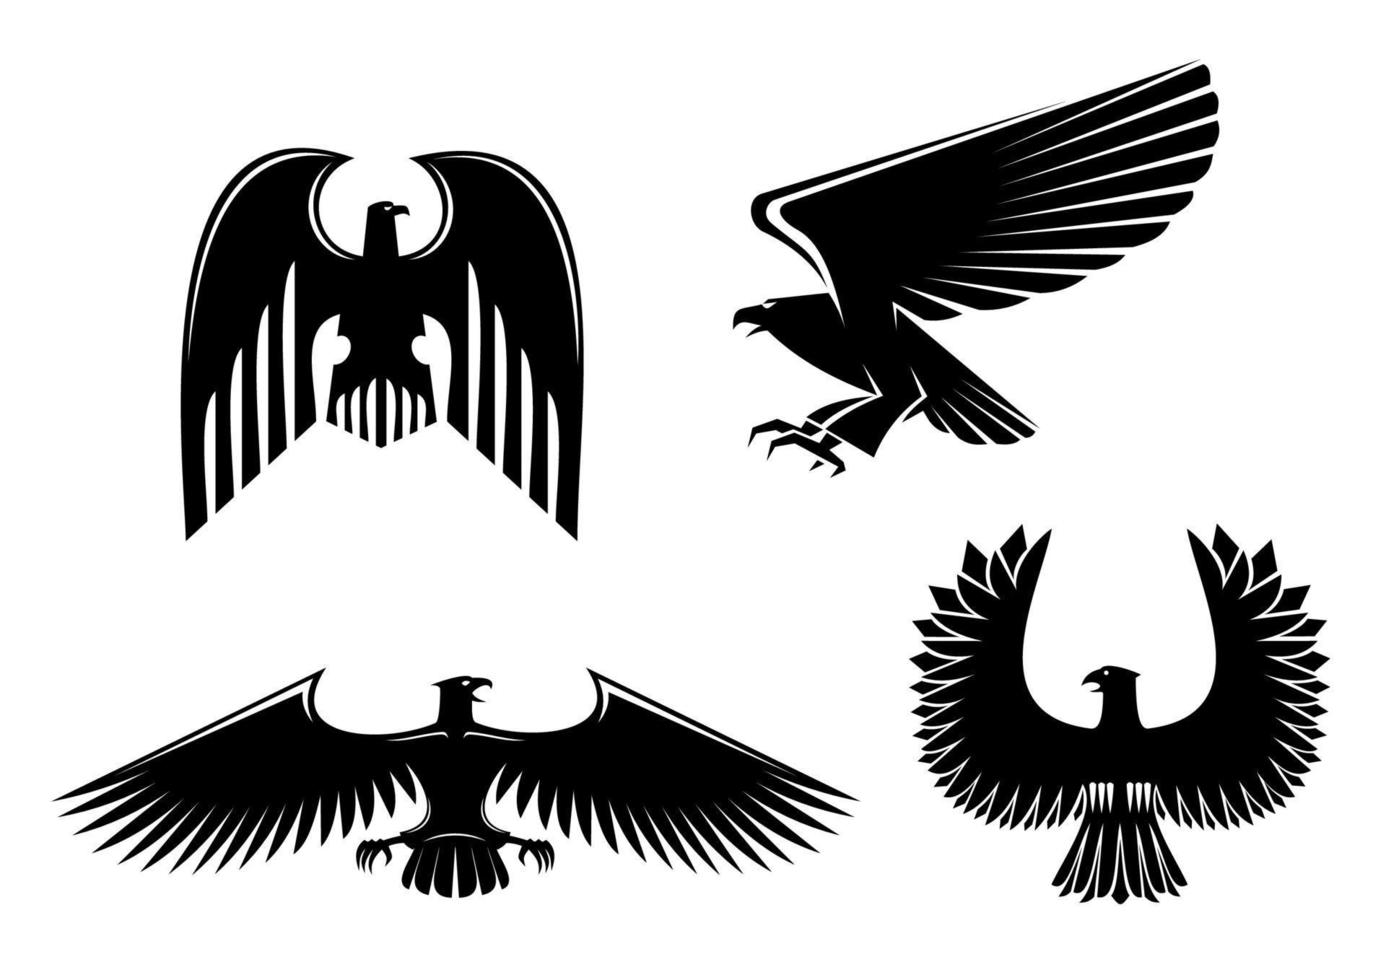 símbolo de águia e falcão vetor